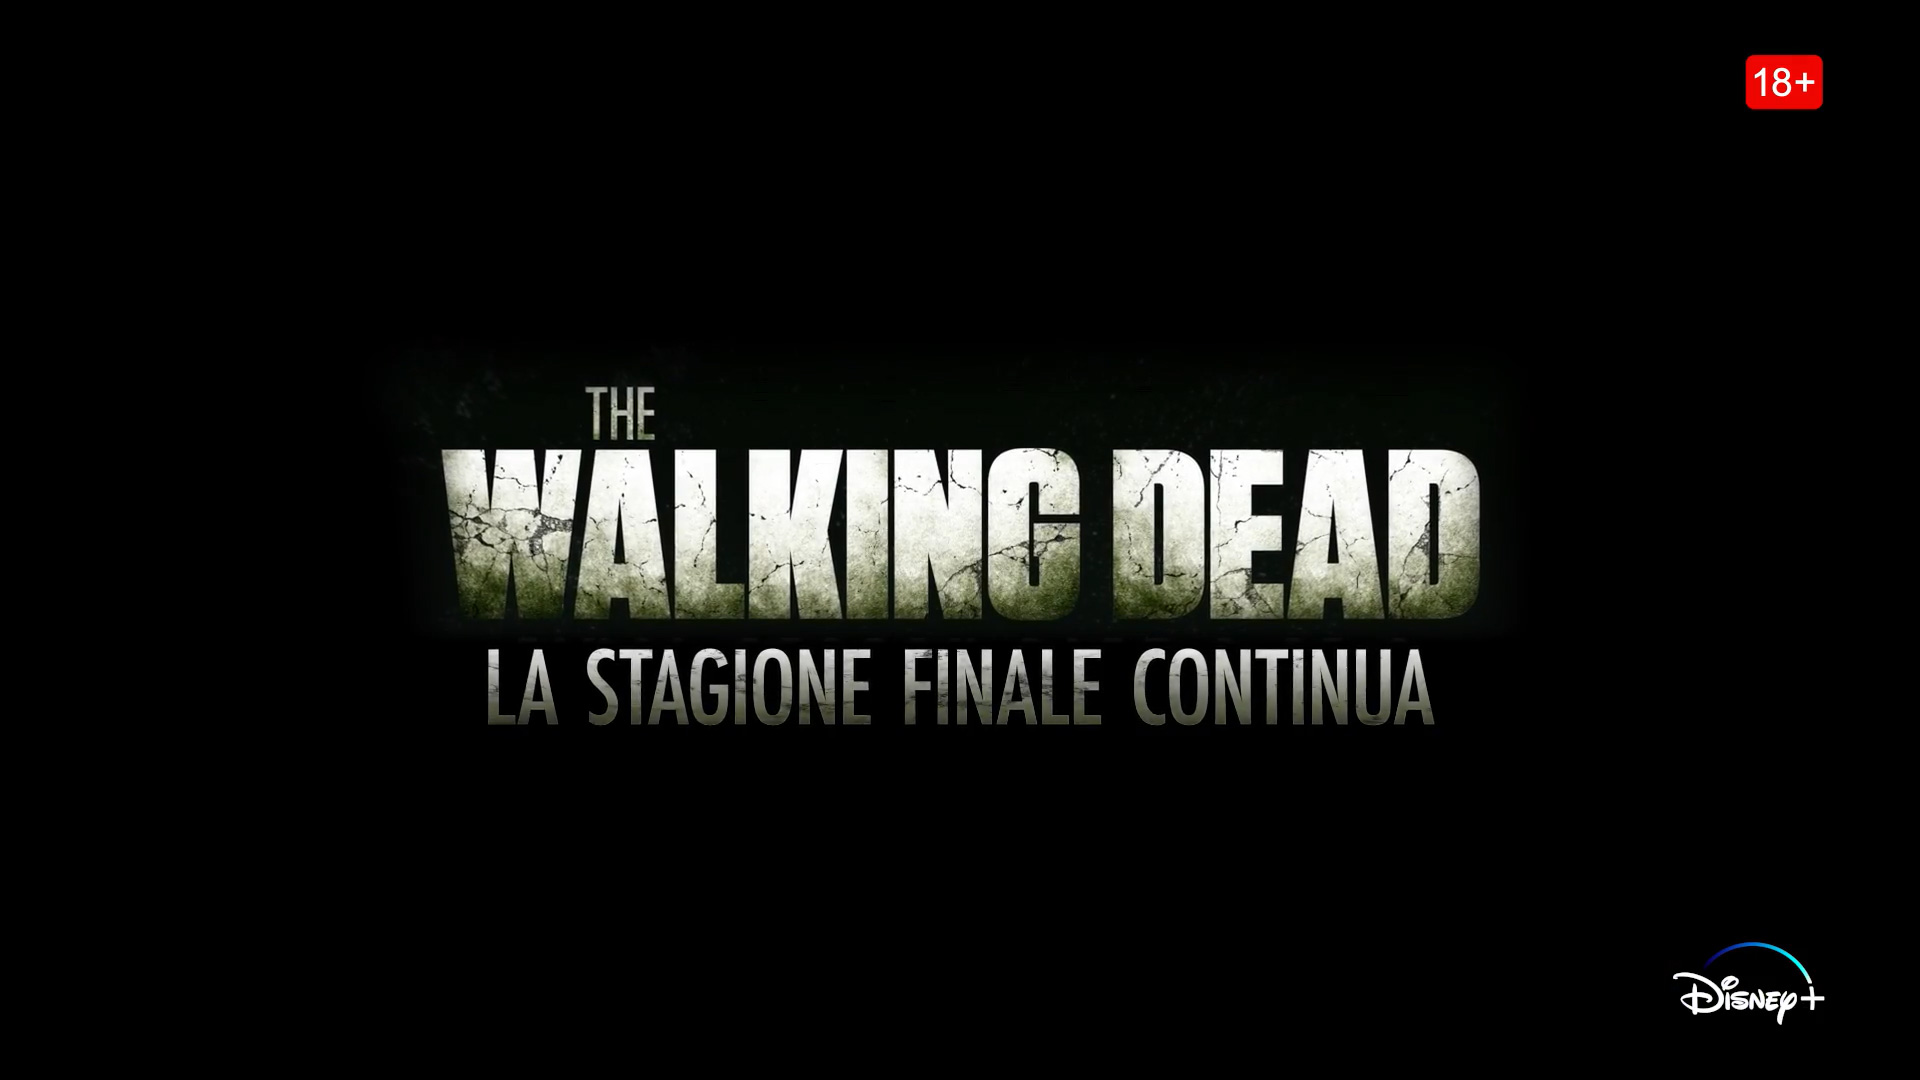 The Walking Dead, trailer seconda parte 11a stagione su Disney Plus